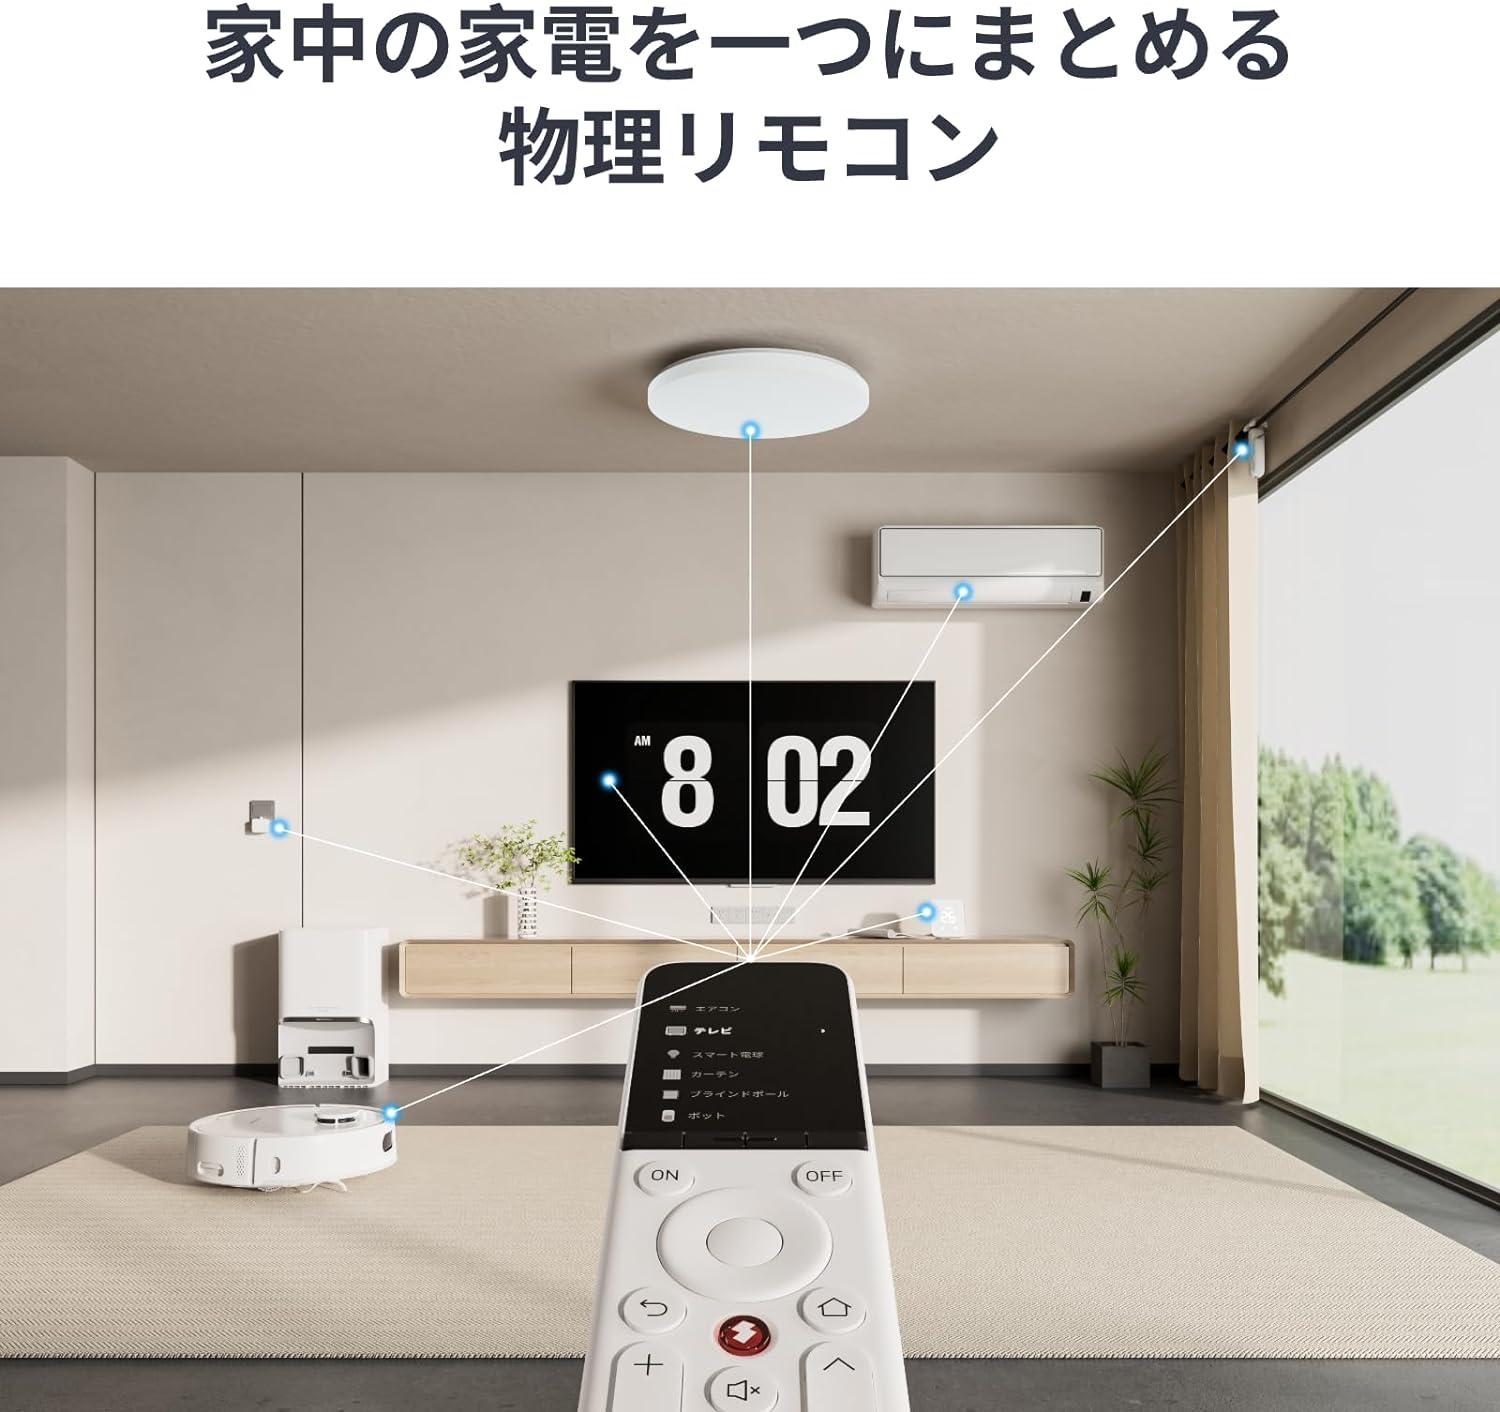 【新製品】家電からIoTまでひとつで操作「SwitchBot 学習リモコン」が発売〜税込6,980円(thumb)